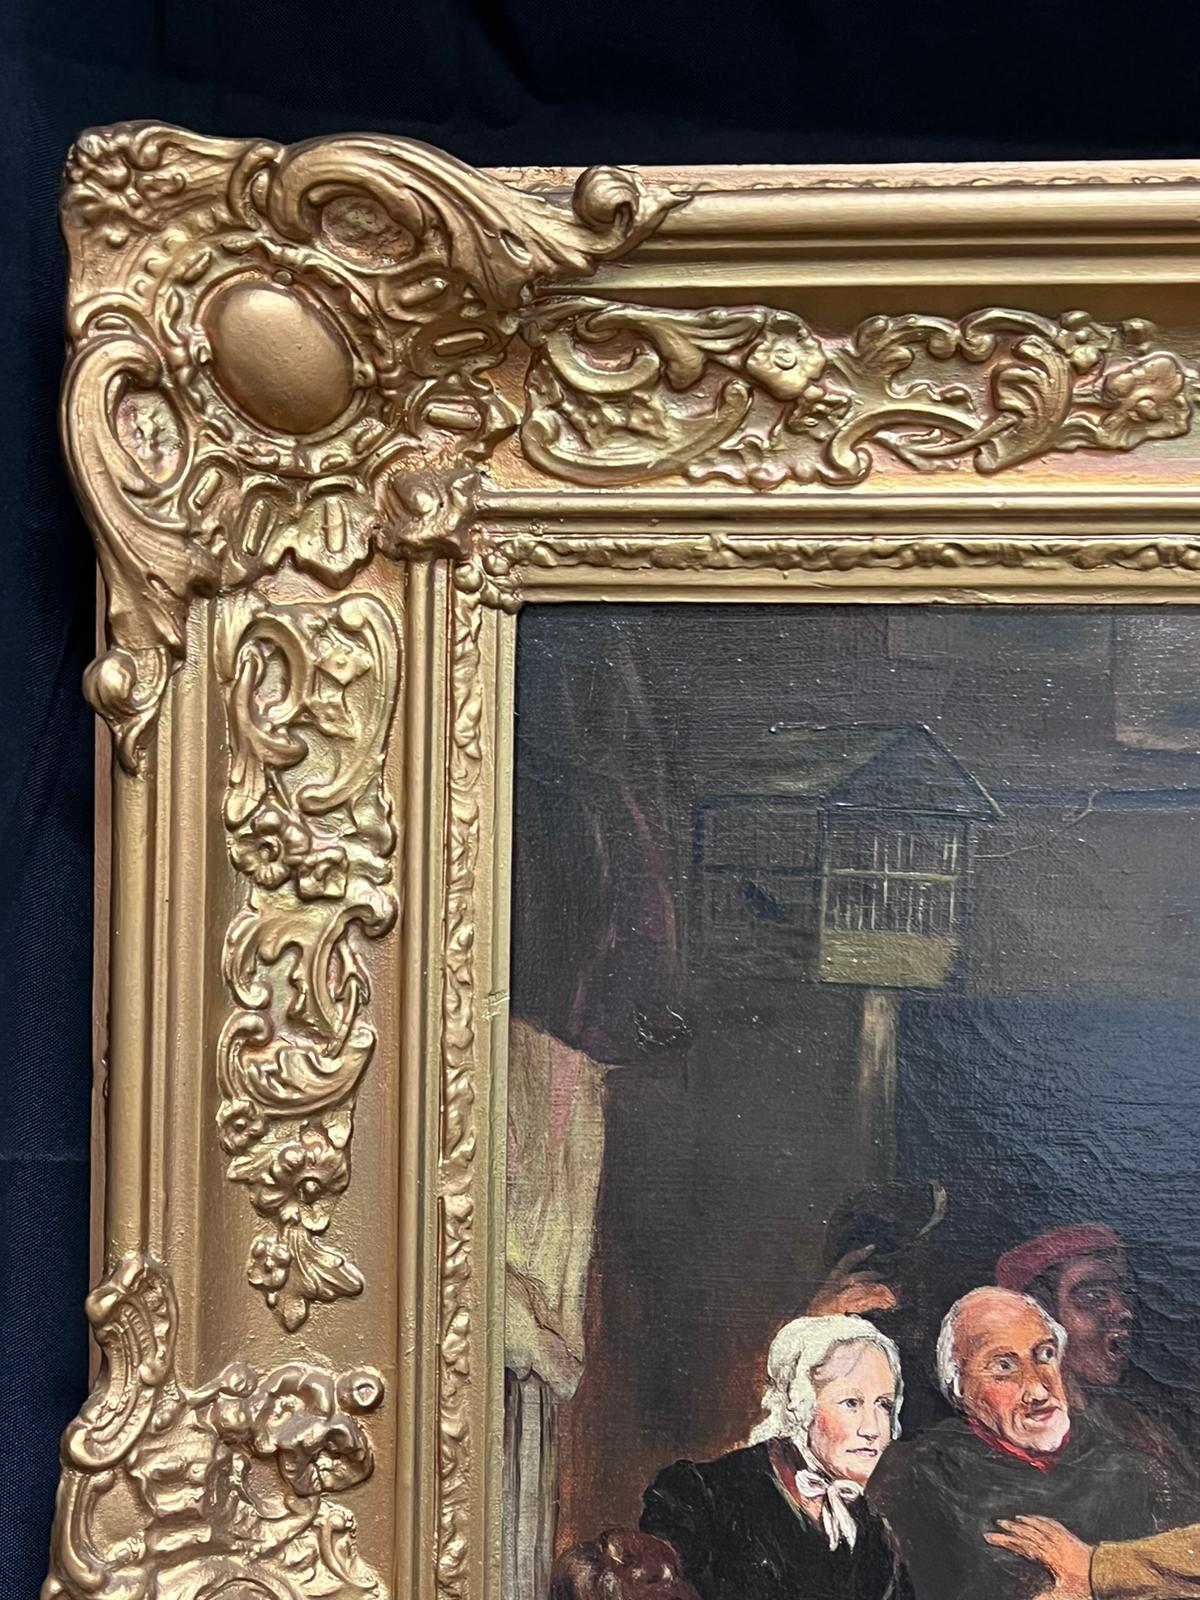 Lord Nelson
Artistics britannique, signé et daté dans le coin inférieur
huile sur toile signée, encadrée
daté de 1918
encadré : 31 x 37.5 pouces
toile : 22 x 30 pouces
provenance : collection privée, Angleterre
état : très bon état ; veuillez noter